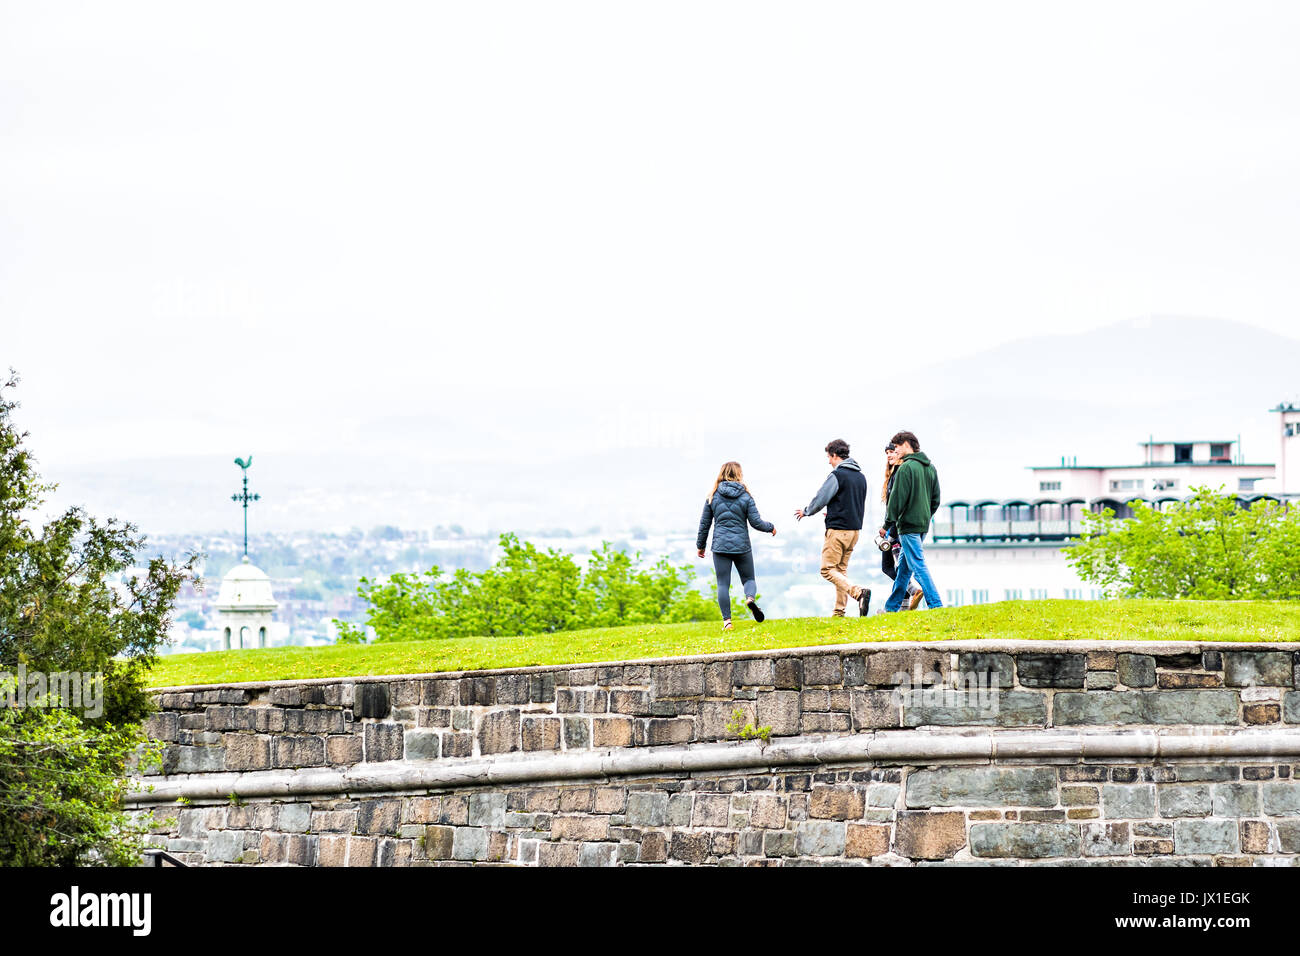 La città di Quebec, Canada - 29 Maggio 2017: un gruppo di giovani a piedi sulla cima di erba verde campi nel parco con fortificazioni muro di pietra Foto Stock